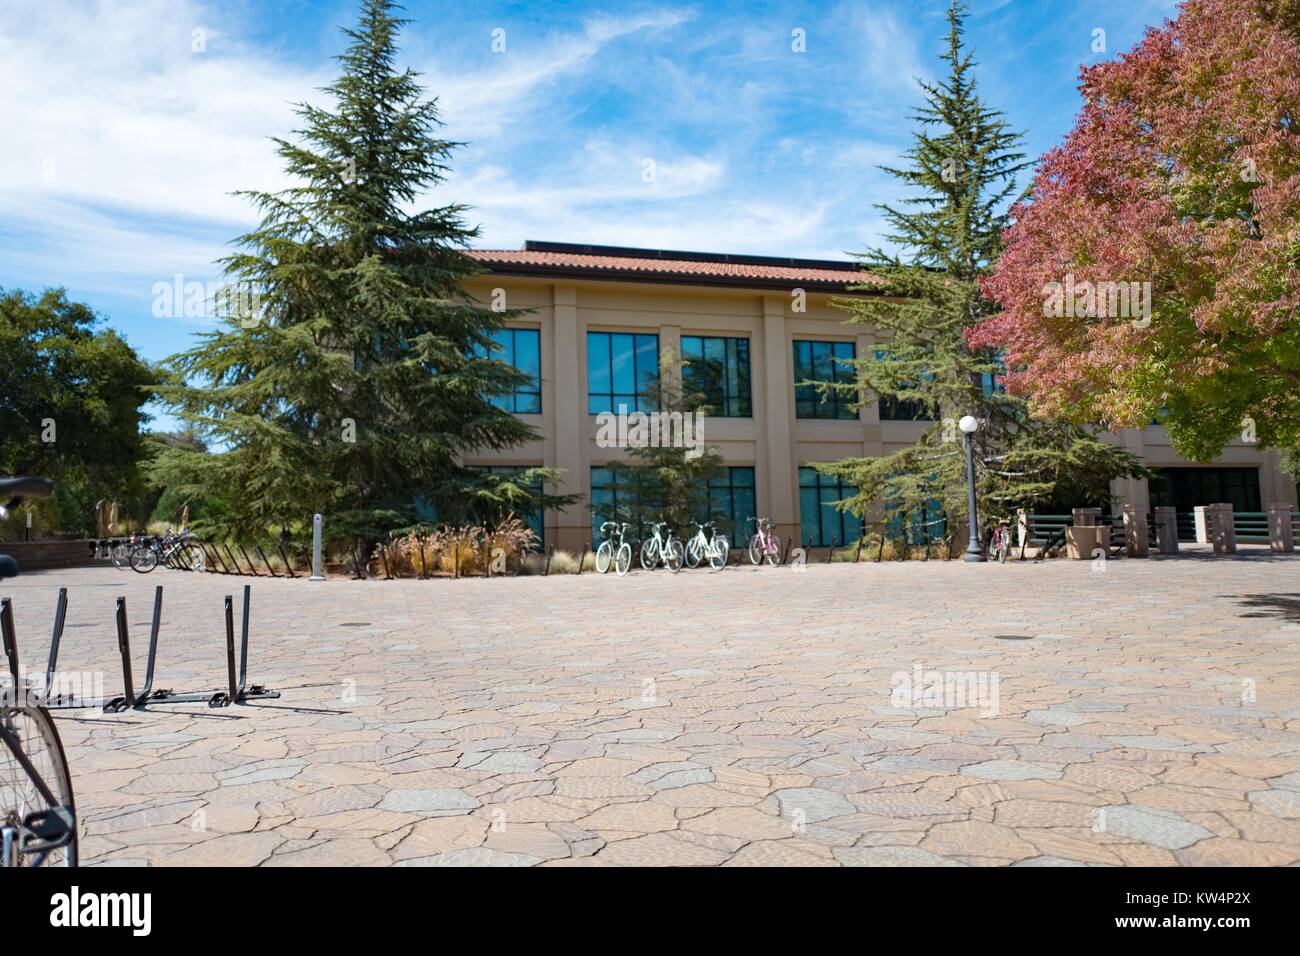 Las bicicletas están estacionados en la plaza empedrada fuera de un edificio de dos pisos, Stanford University, Stanford, California, 3 de septiembre de 2016. Foto de stock